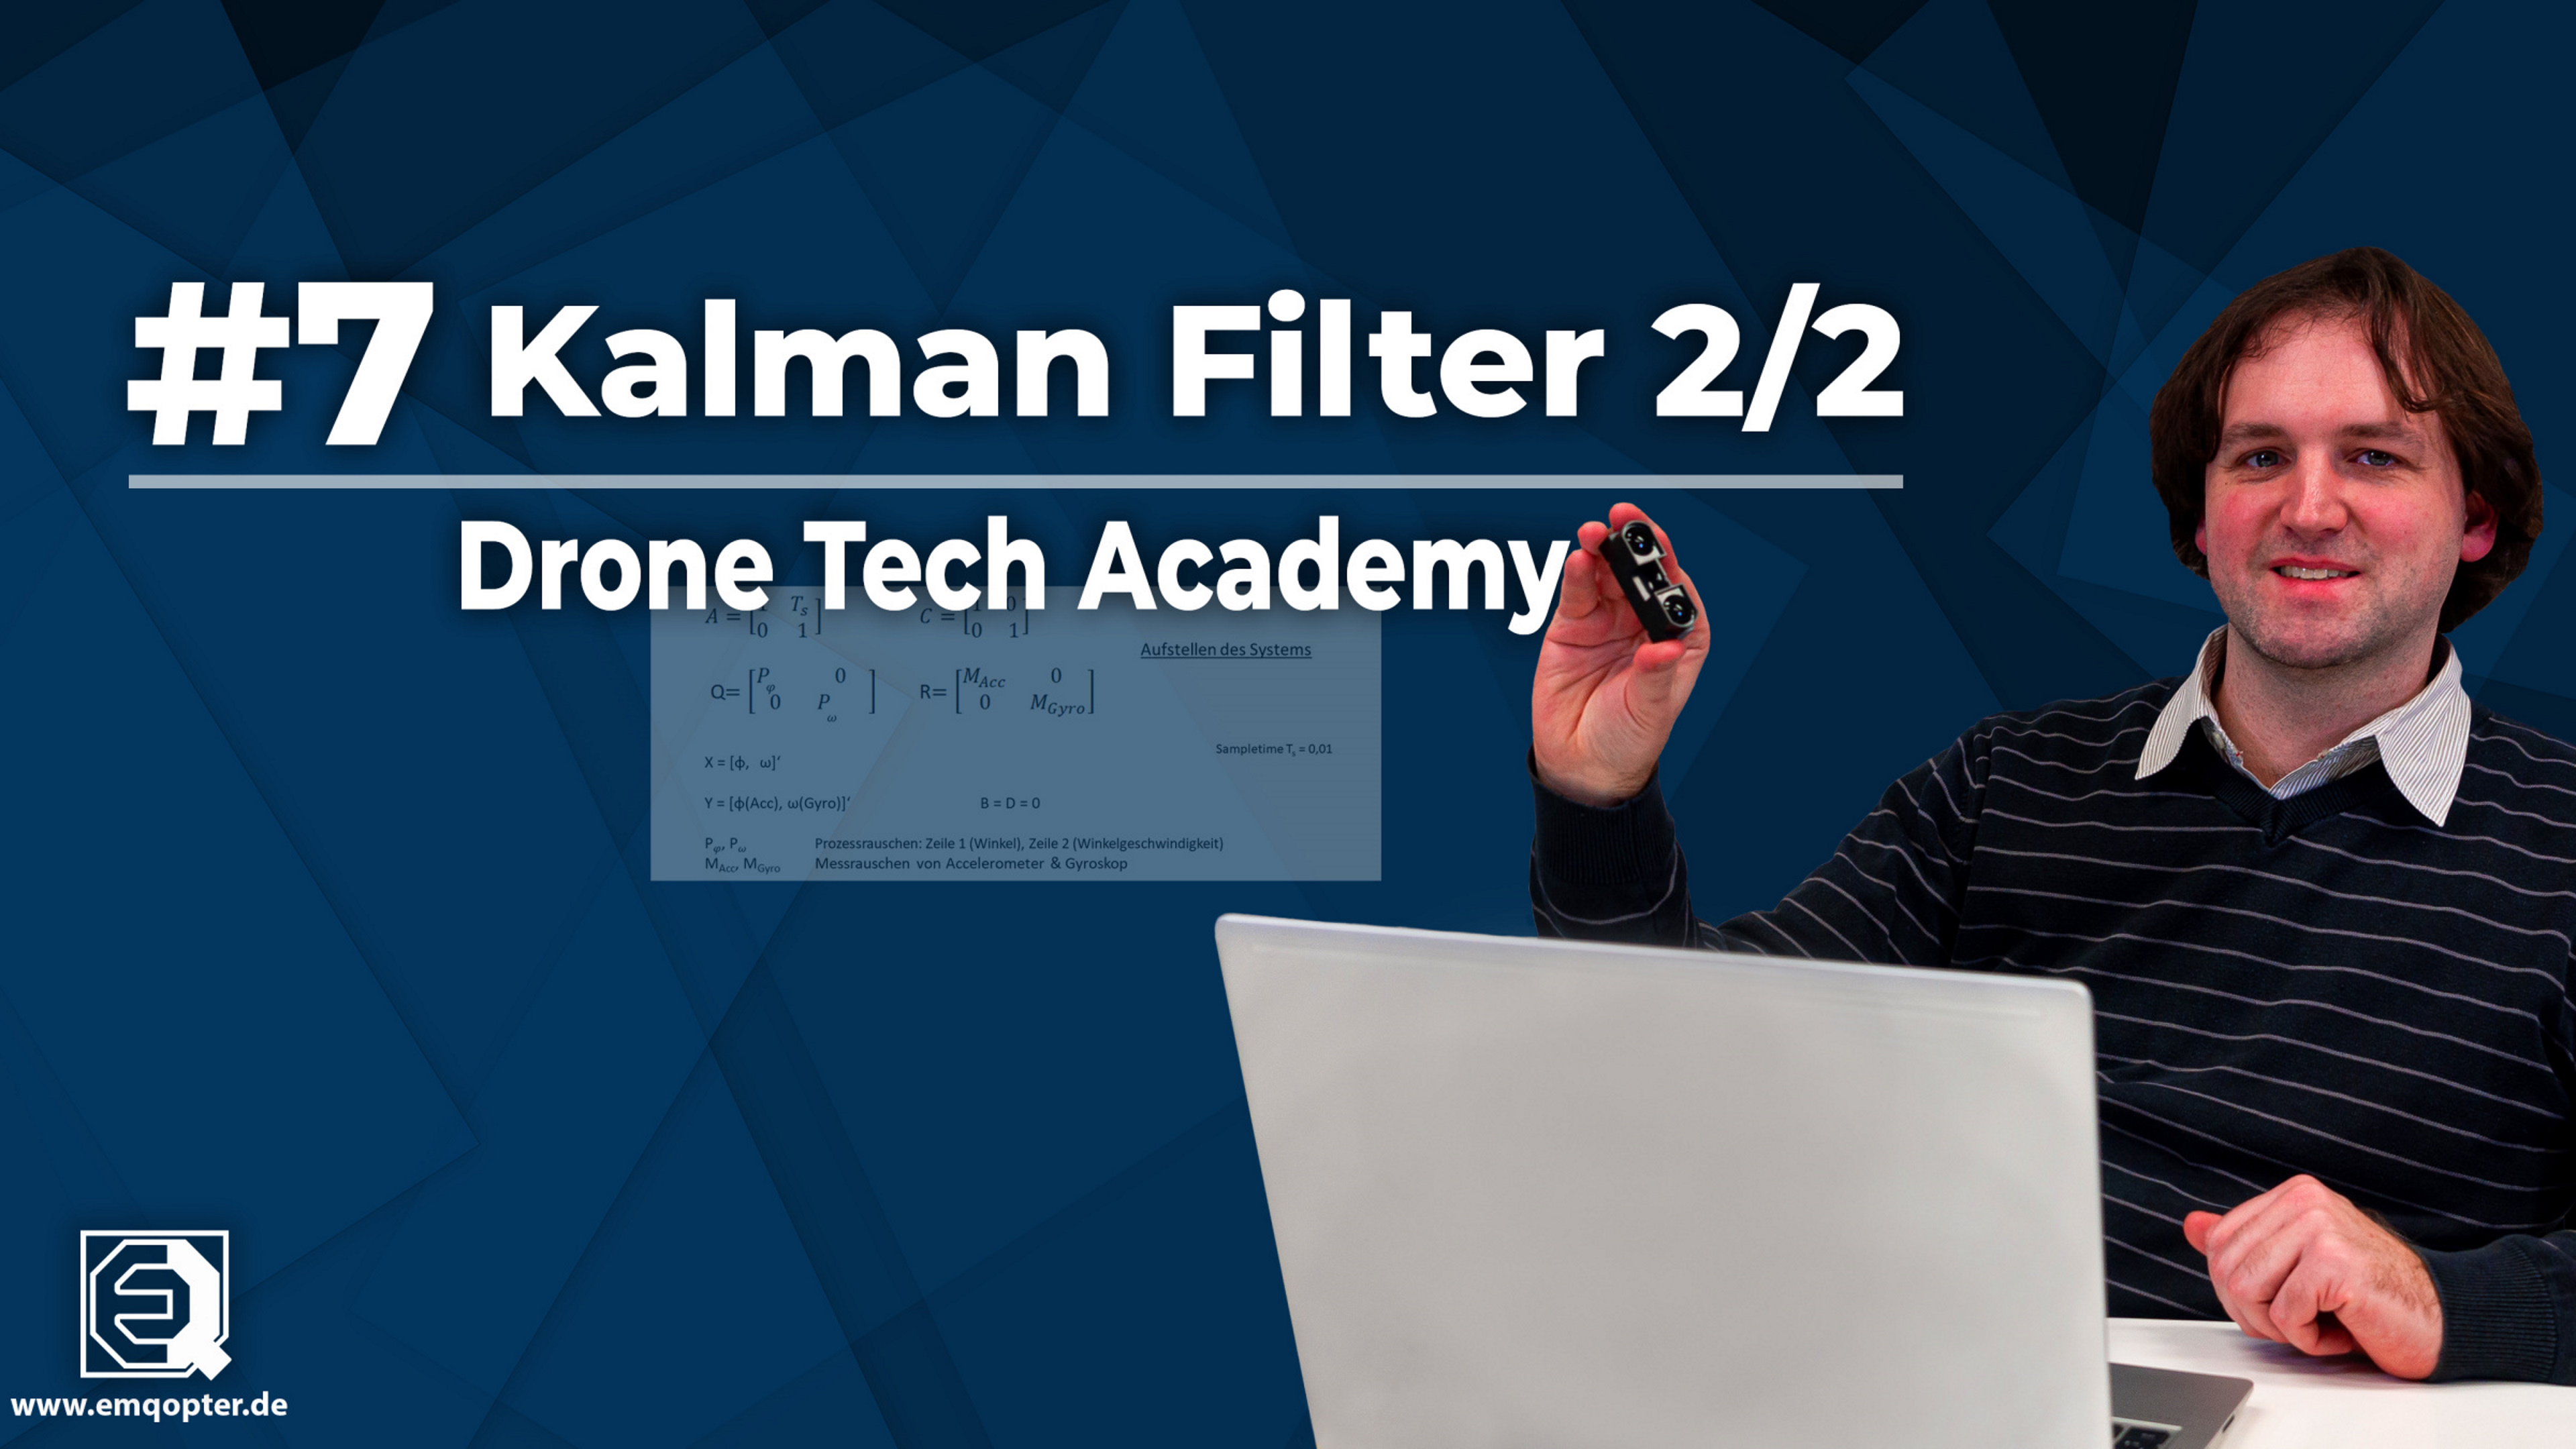 Drone Tech Academy: #7 Kalman Filter 2/2